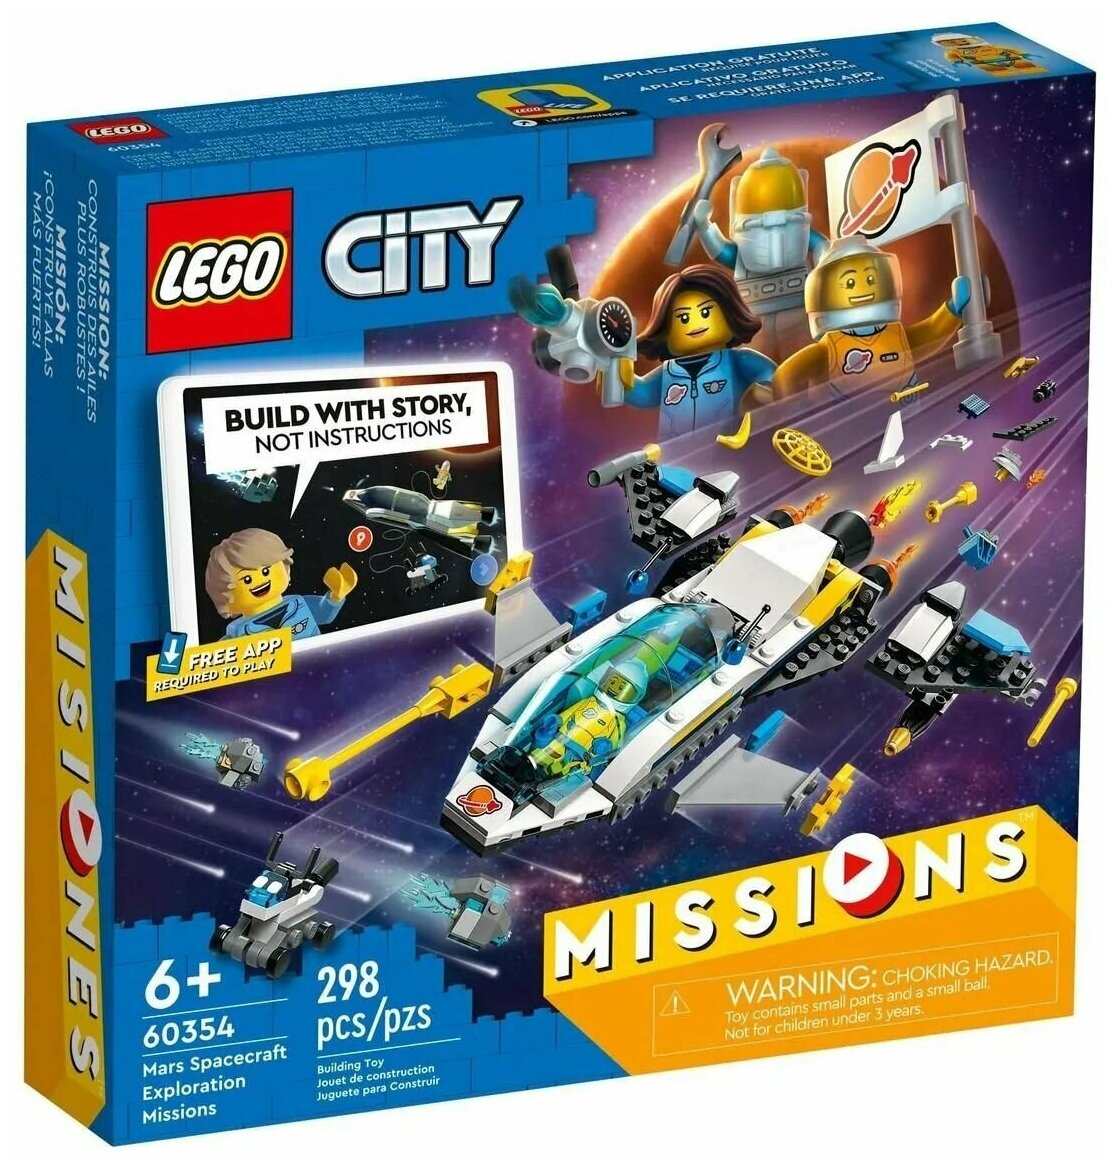 Конструктор LEGO City Космическая экспедиция для исследования Марса, деталей: 298